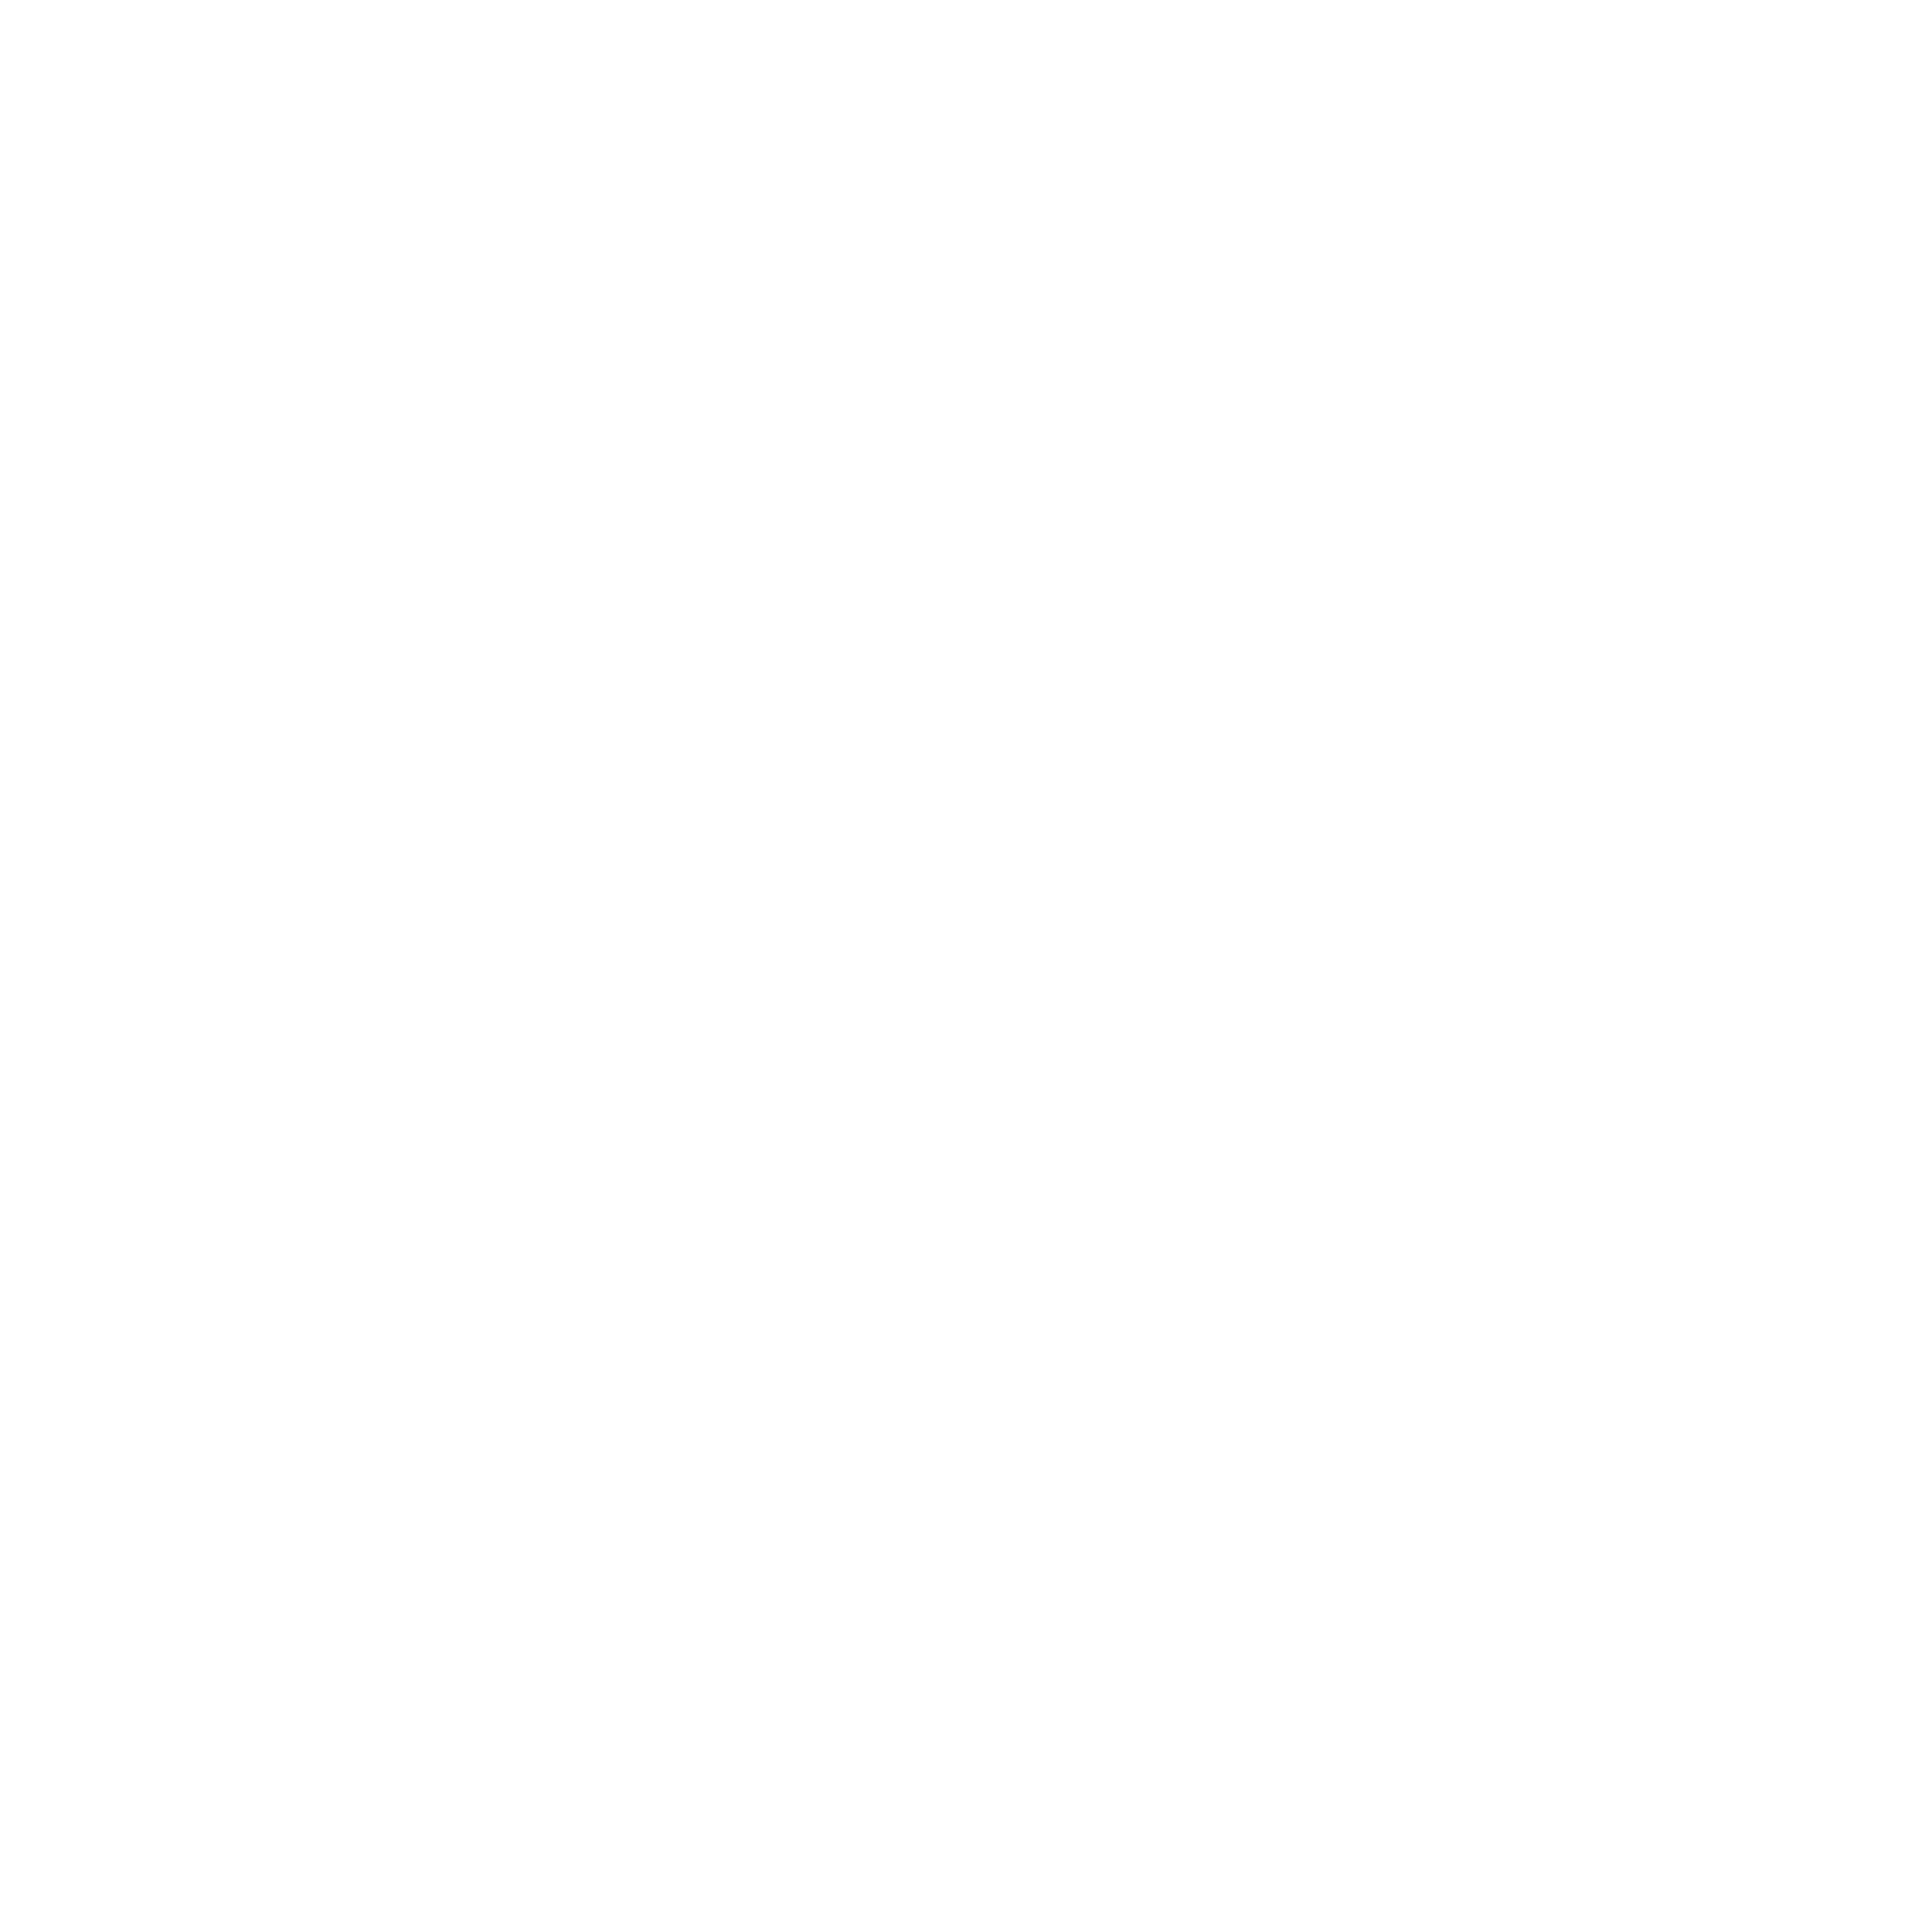 Centrica Logo - Centrica Logo PNG Transparent & SVG Vector - Freebie Supply